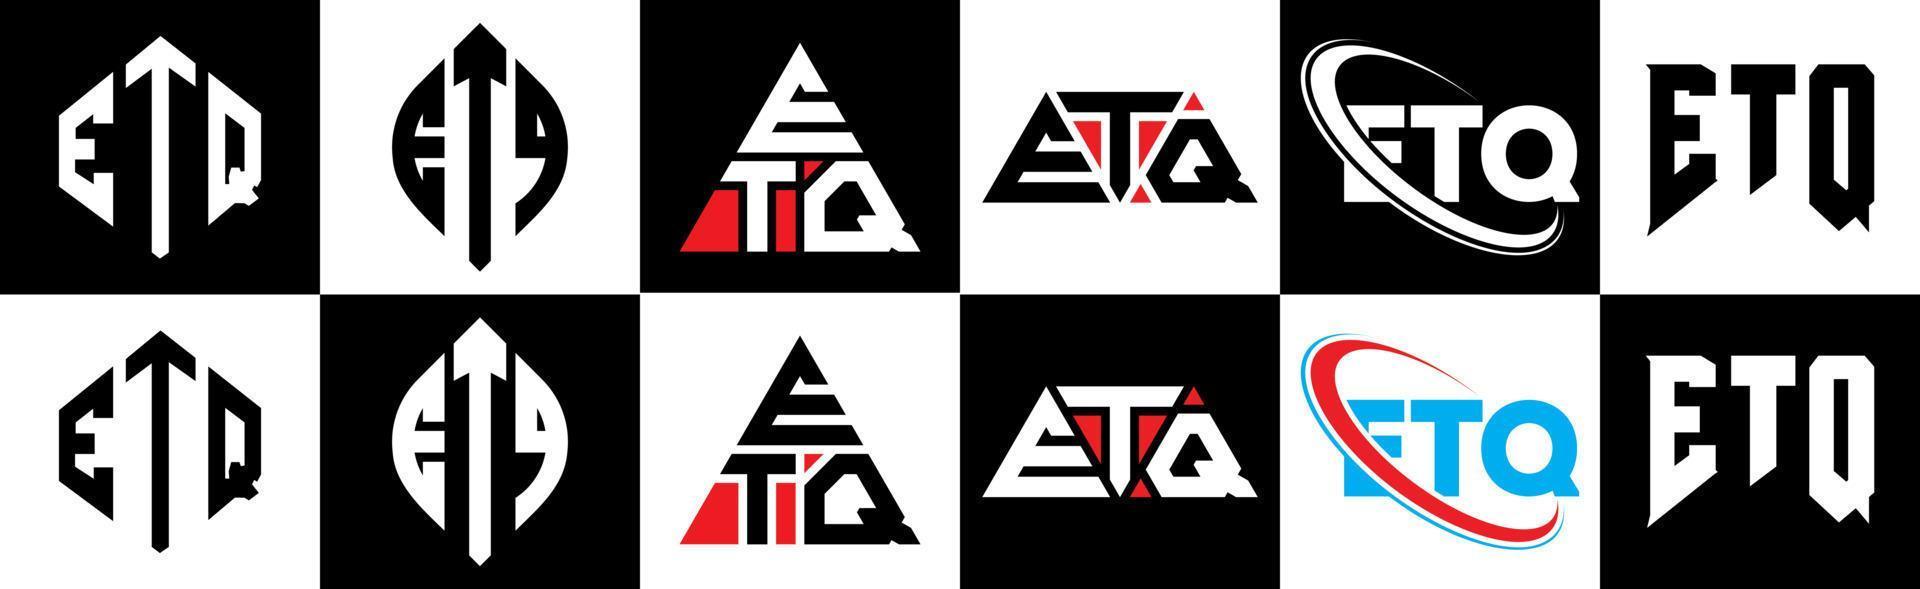 Diseño de logotipo de letra etq en seis estilos. etq polígono, círculo, triángulo, hexágono, estilo plano y simple con logotipo de letra de variación de color blanco y negro en una mesa de trabajo. etq logotipo minimalista y clásico vector